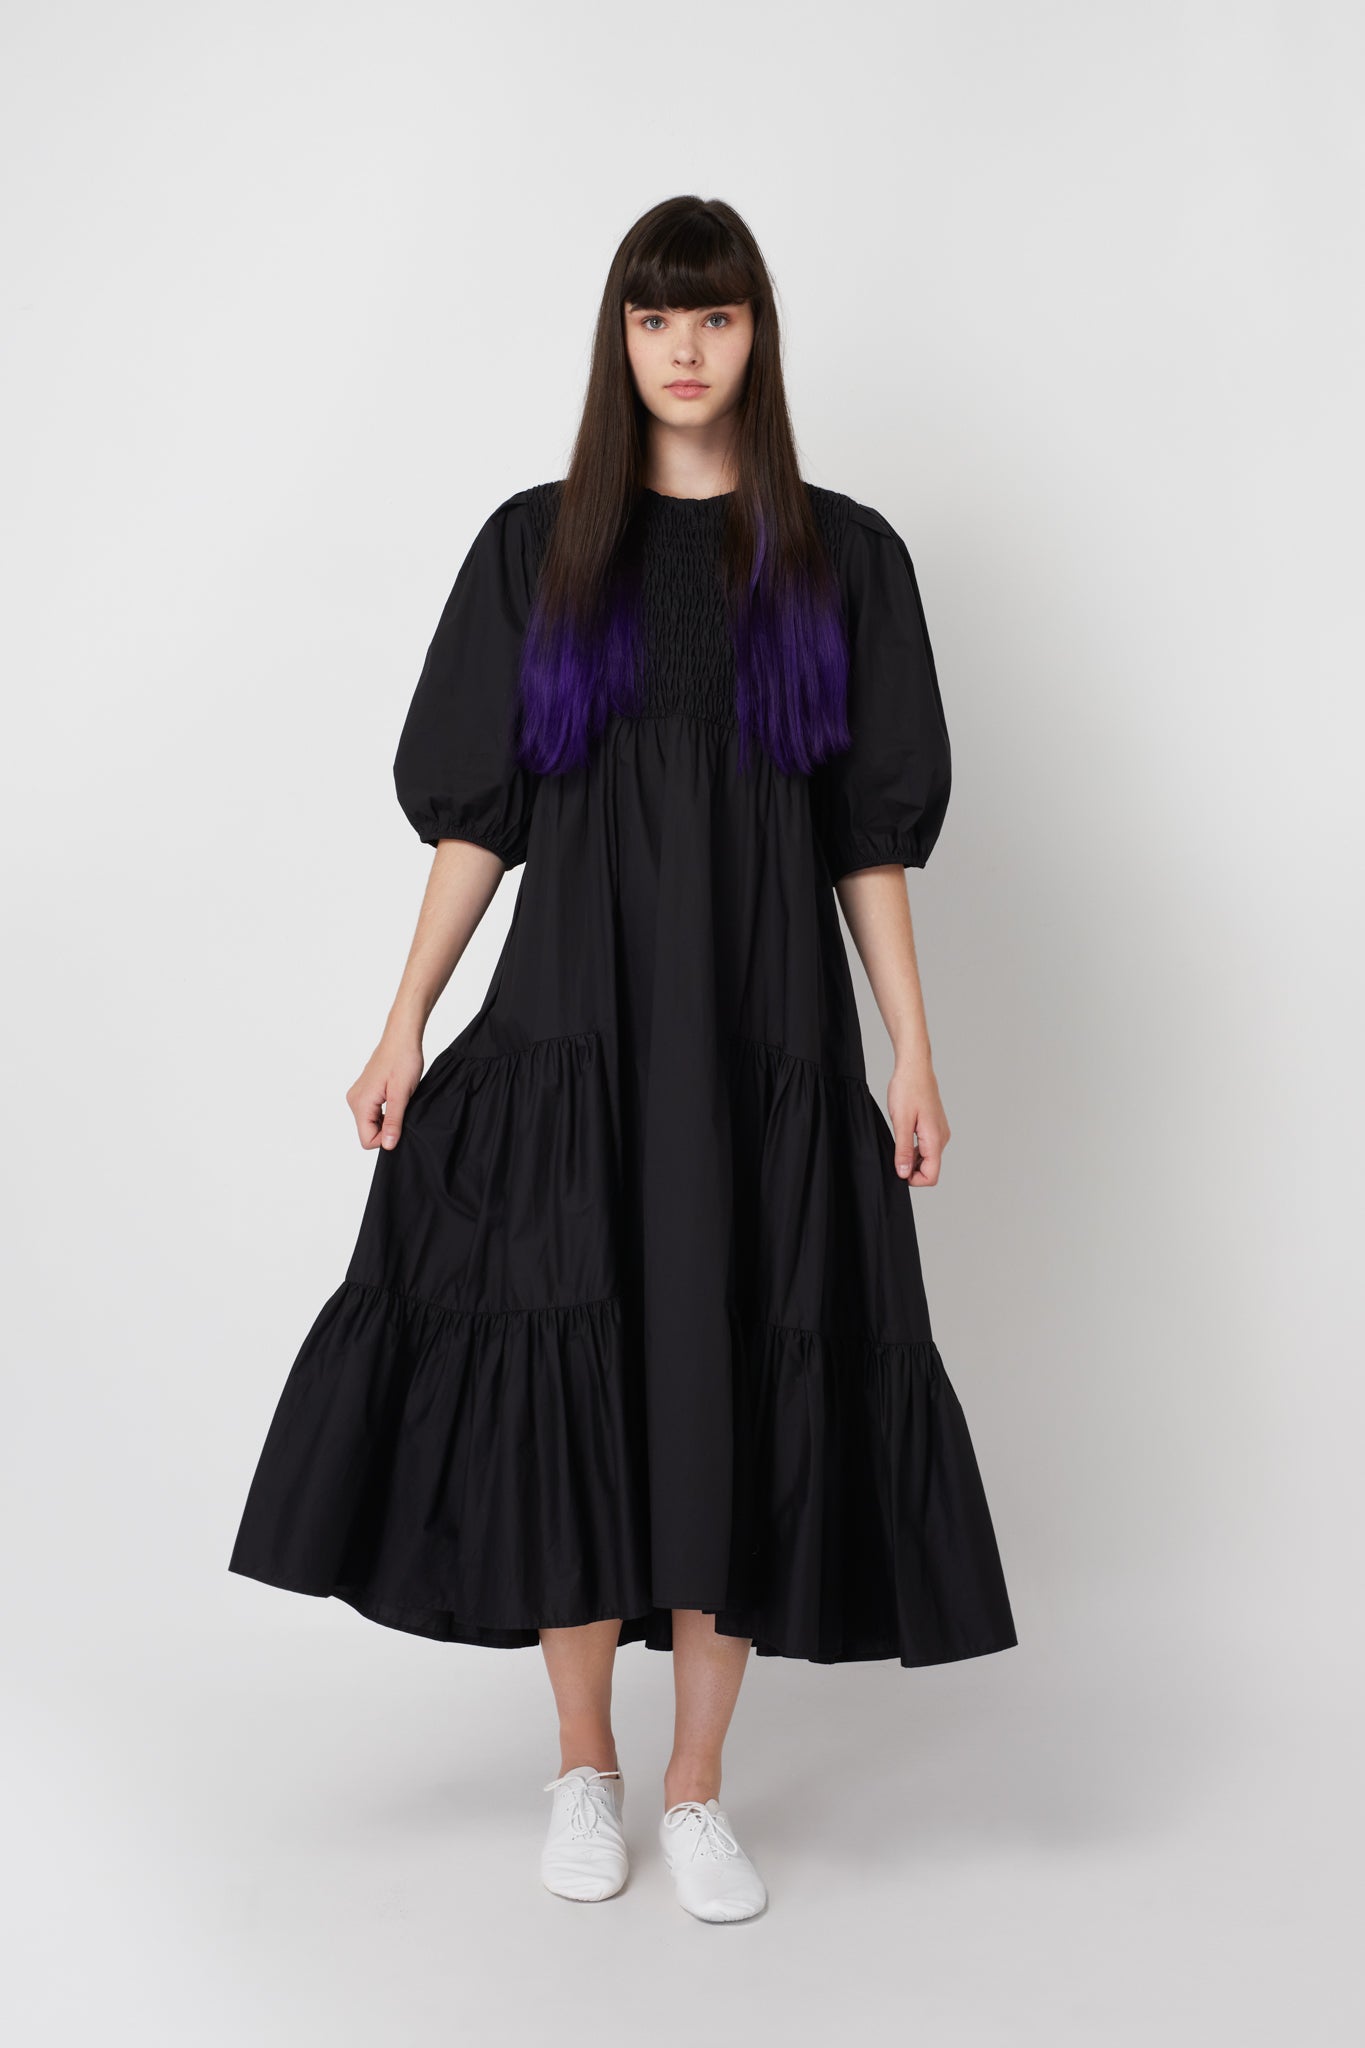 Black Smocked Dress #1661 FINAL SALE